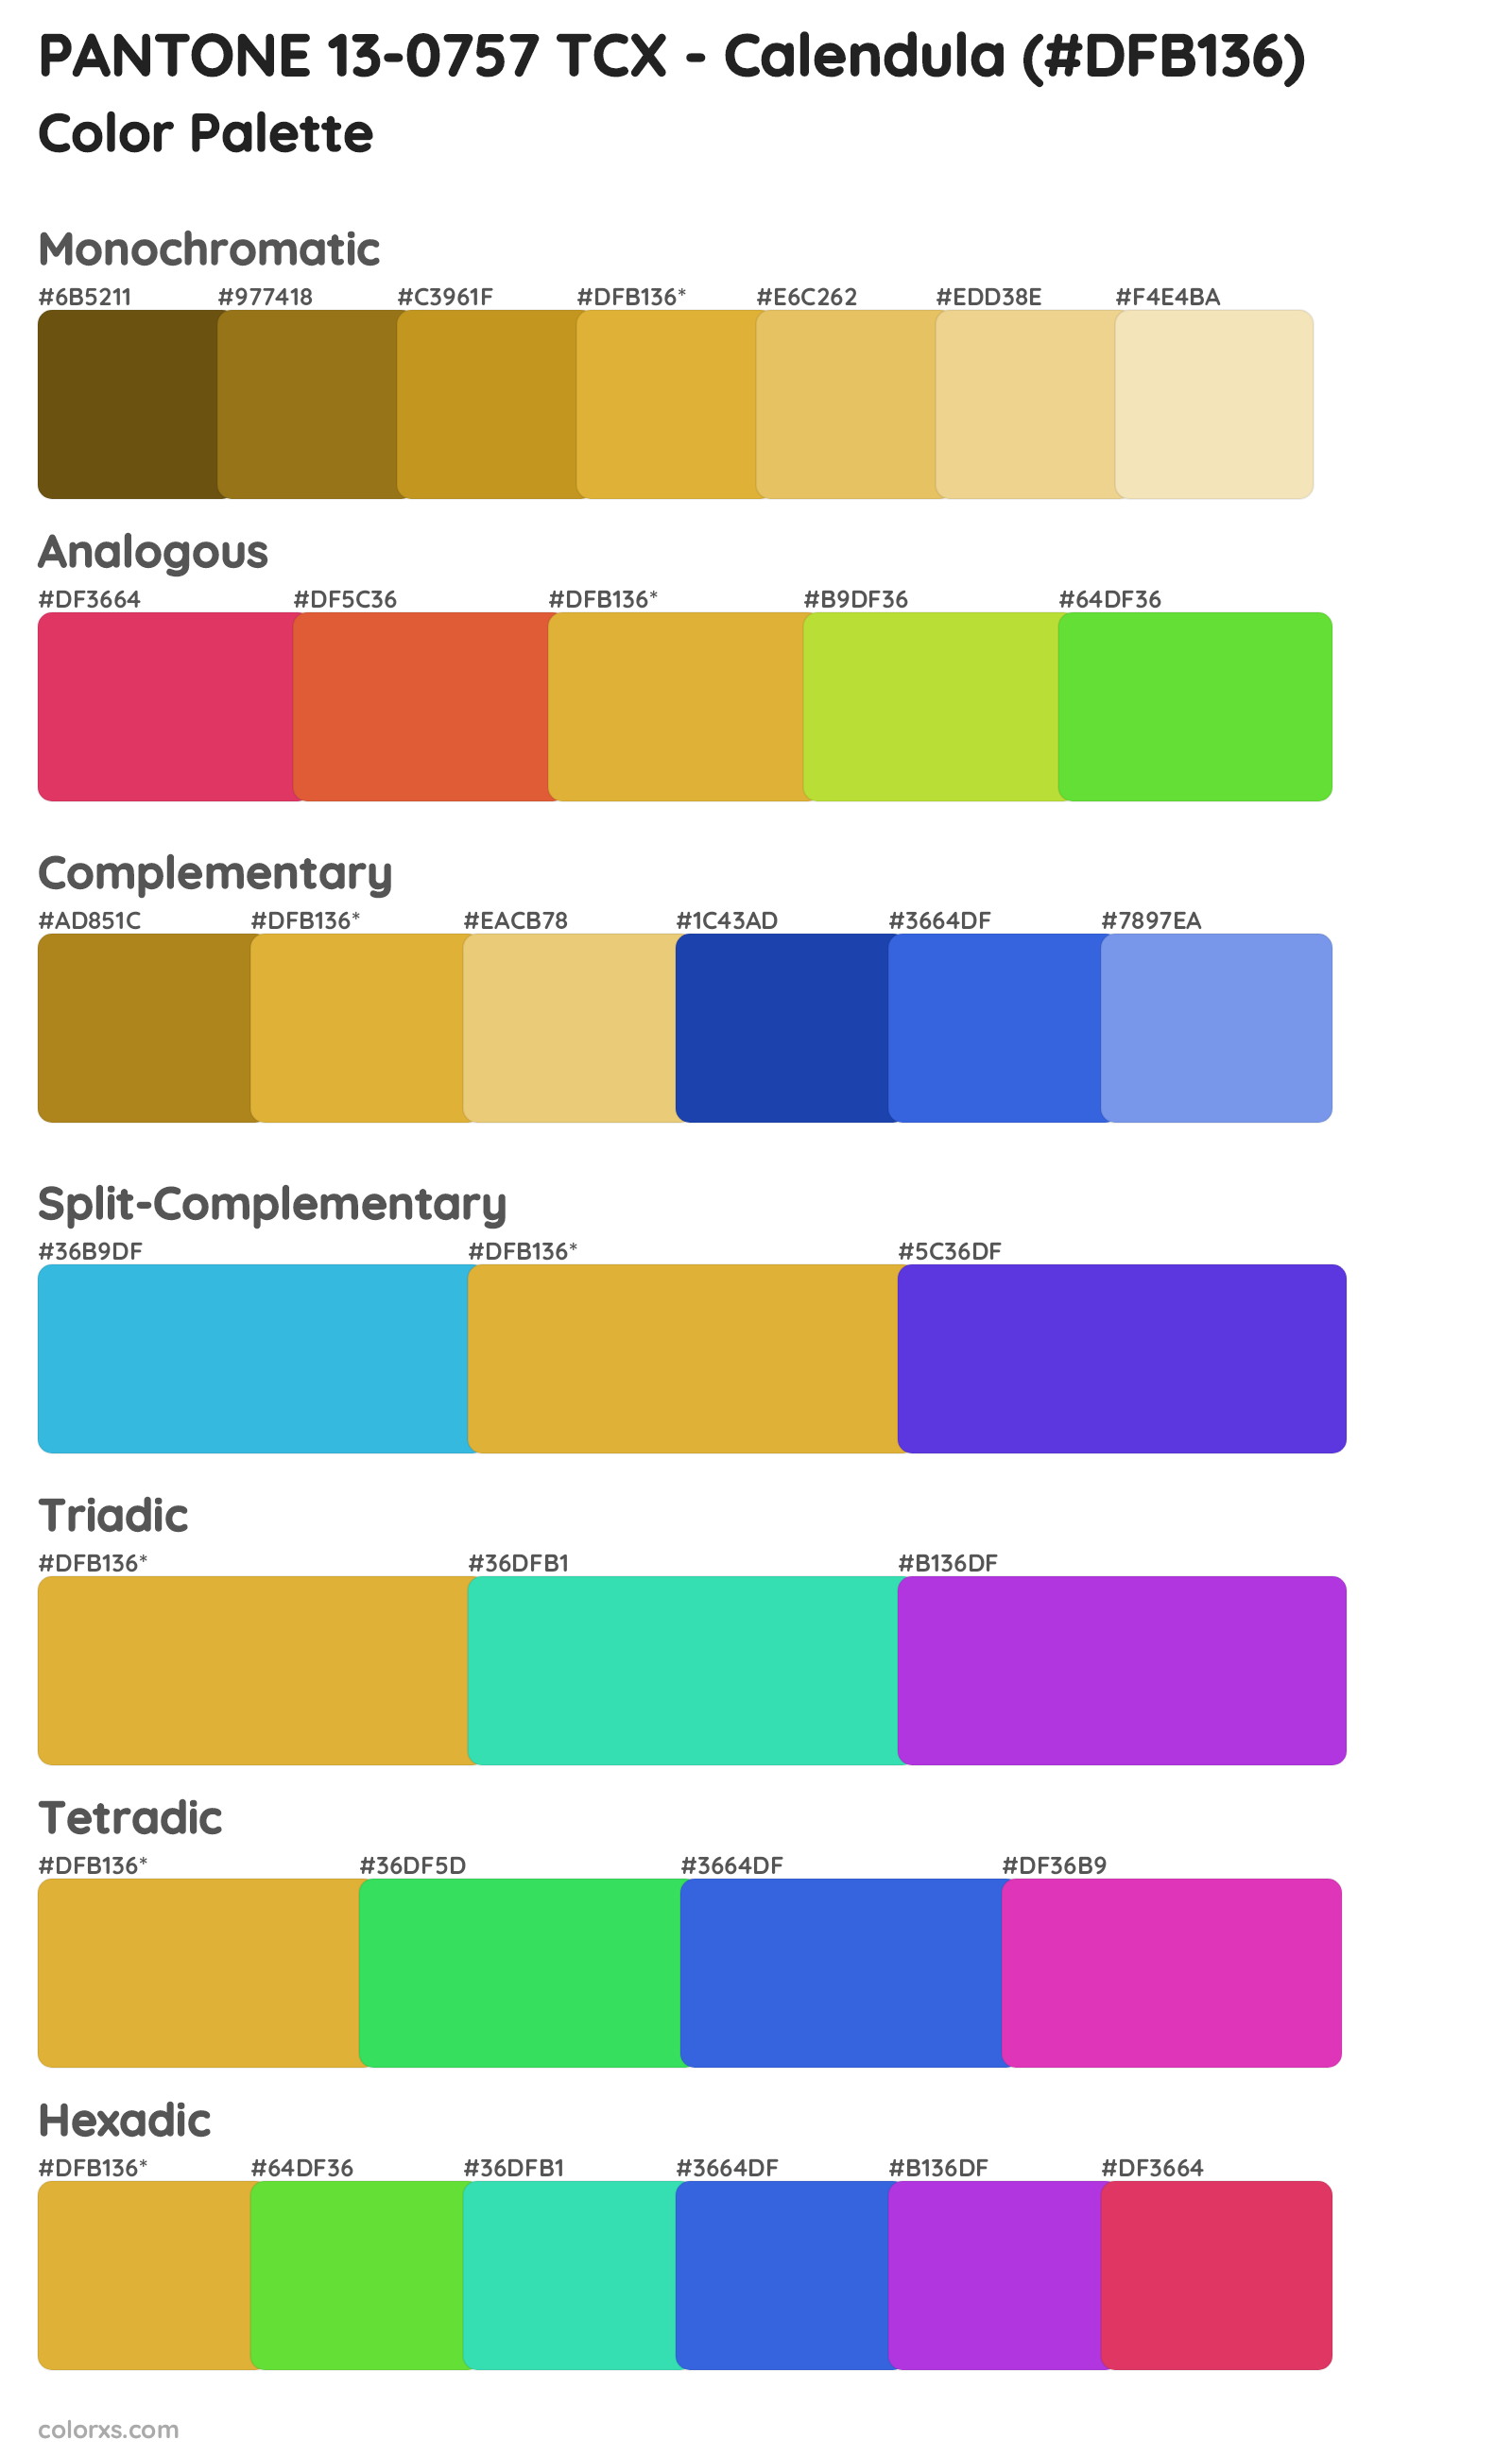 PANTONE 13-0757 TCX - Calendula Color Scheme Palettes